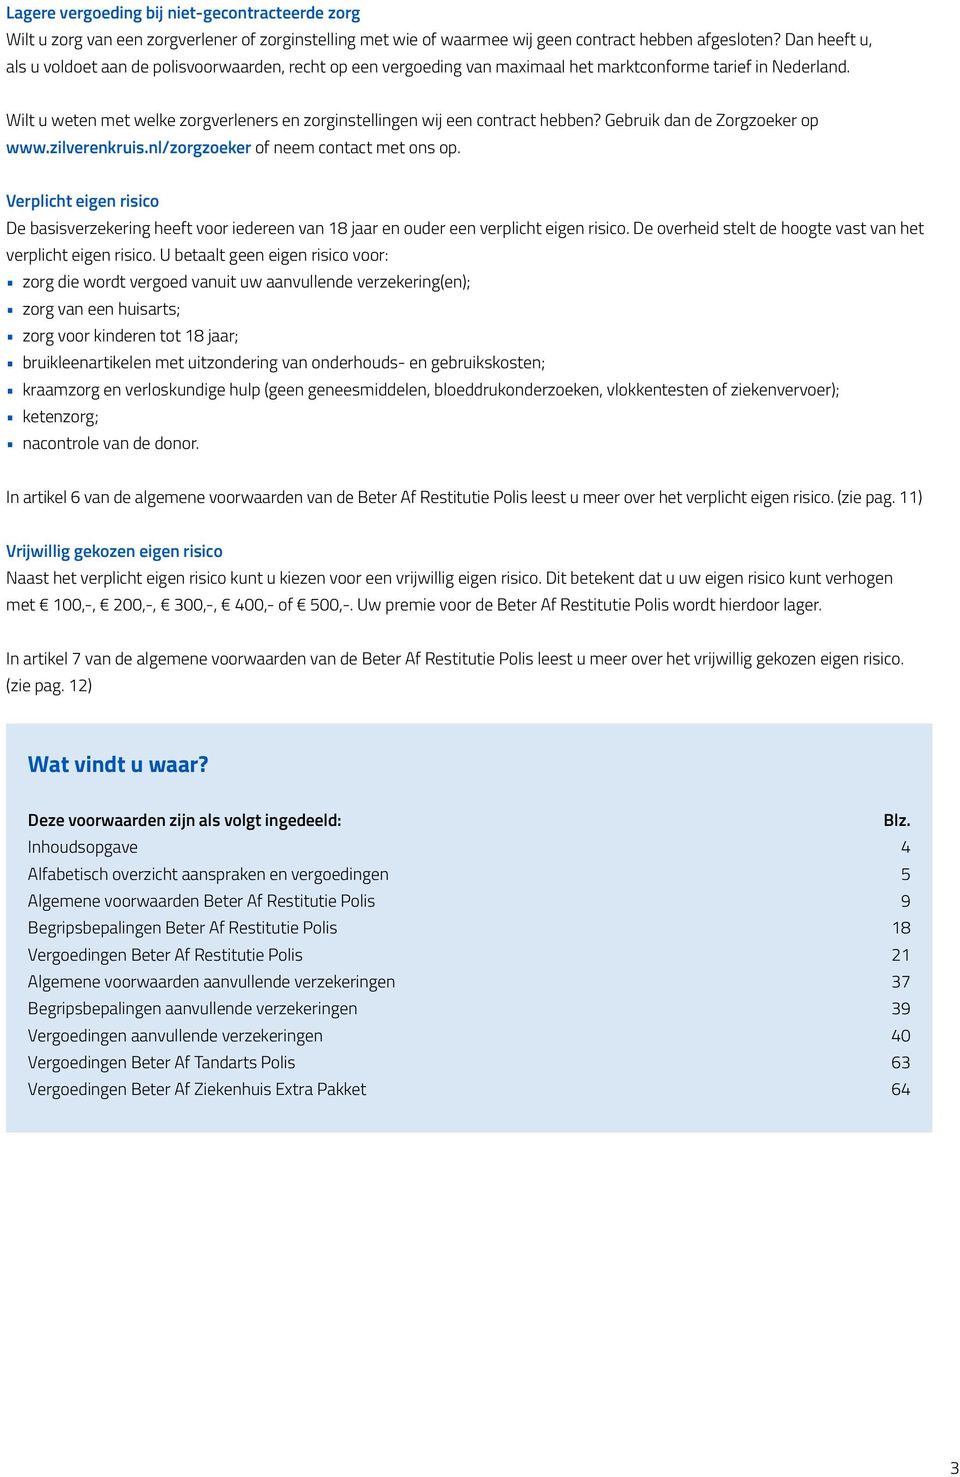 Wilt u weten met welke zorgverleners en zorginstellingen wij een contract hebben? Gebruik dan de Zorgzoeker op www.zilverenkruis.nl/zorgzoeker of neem contact met ons op.